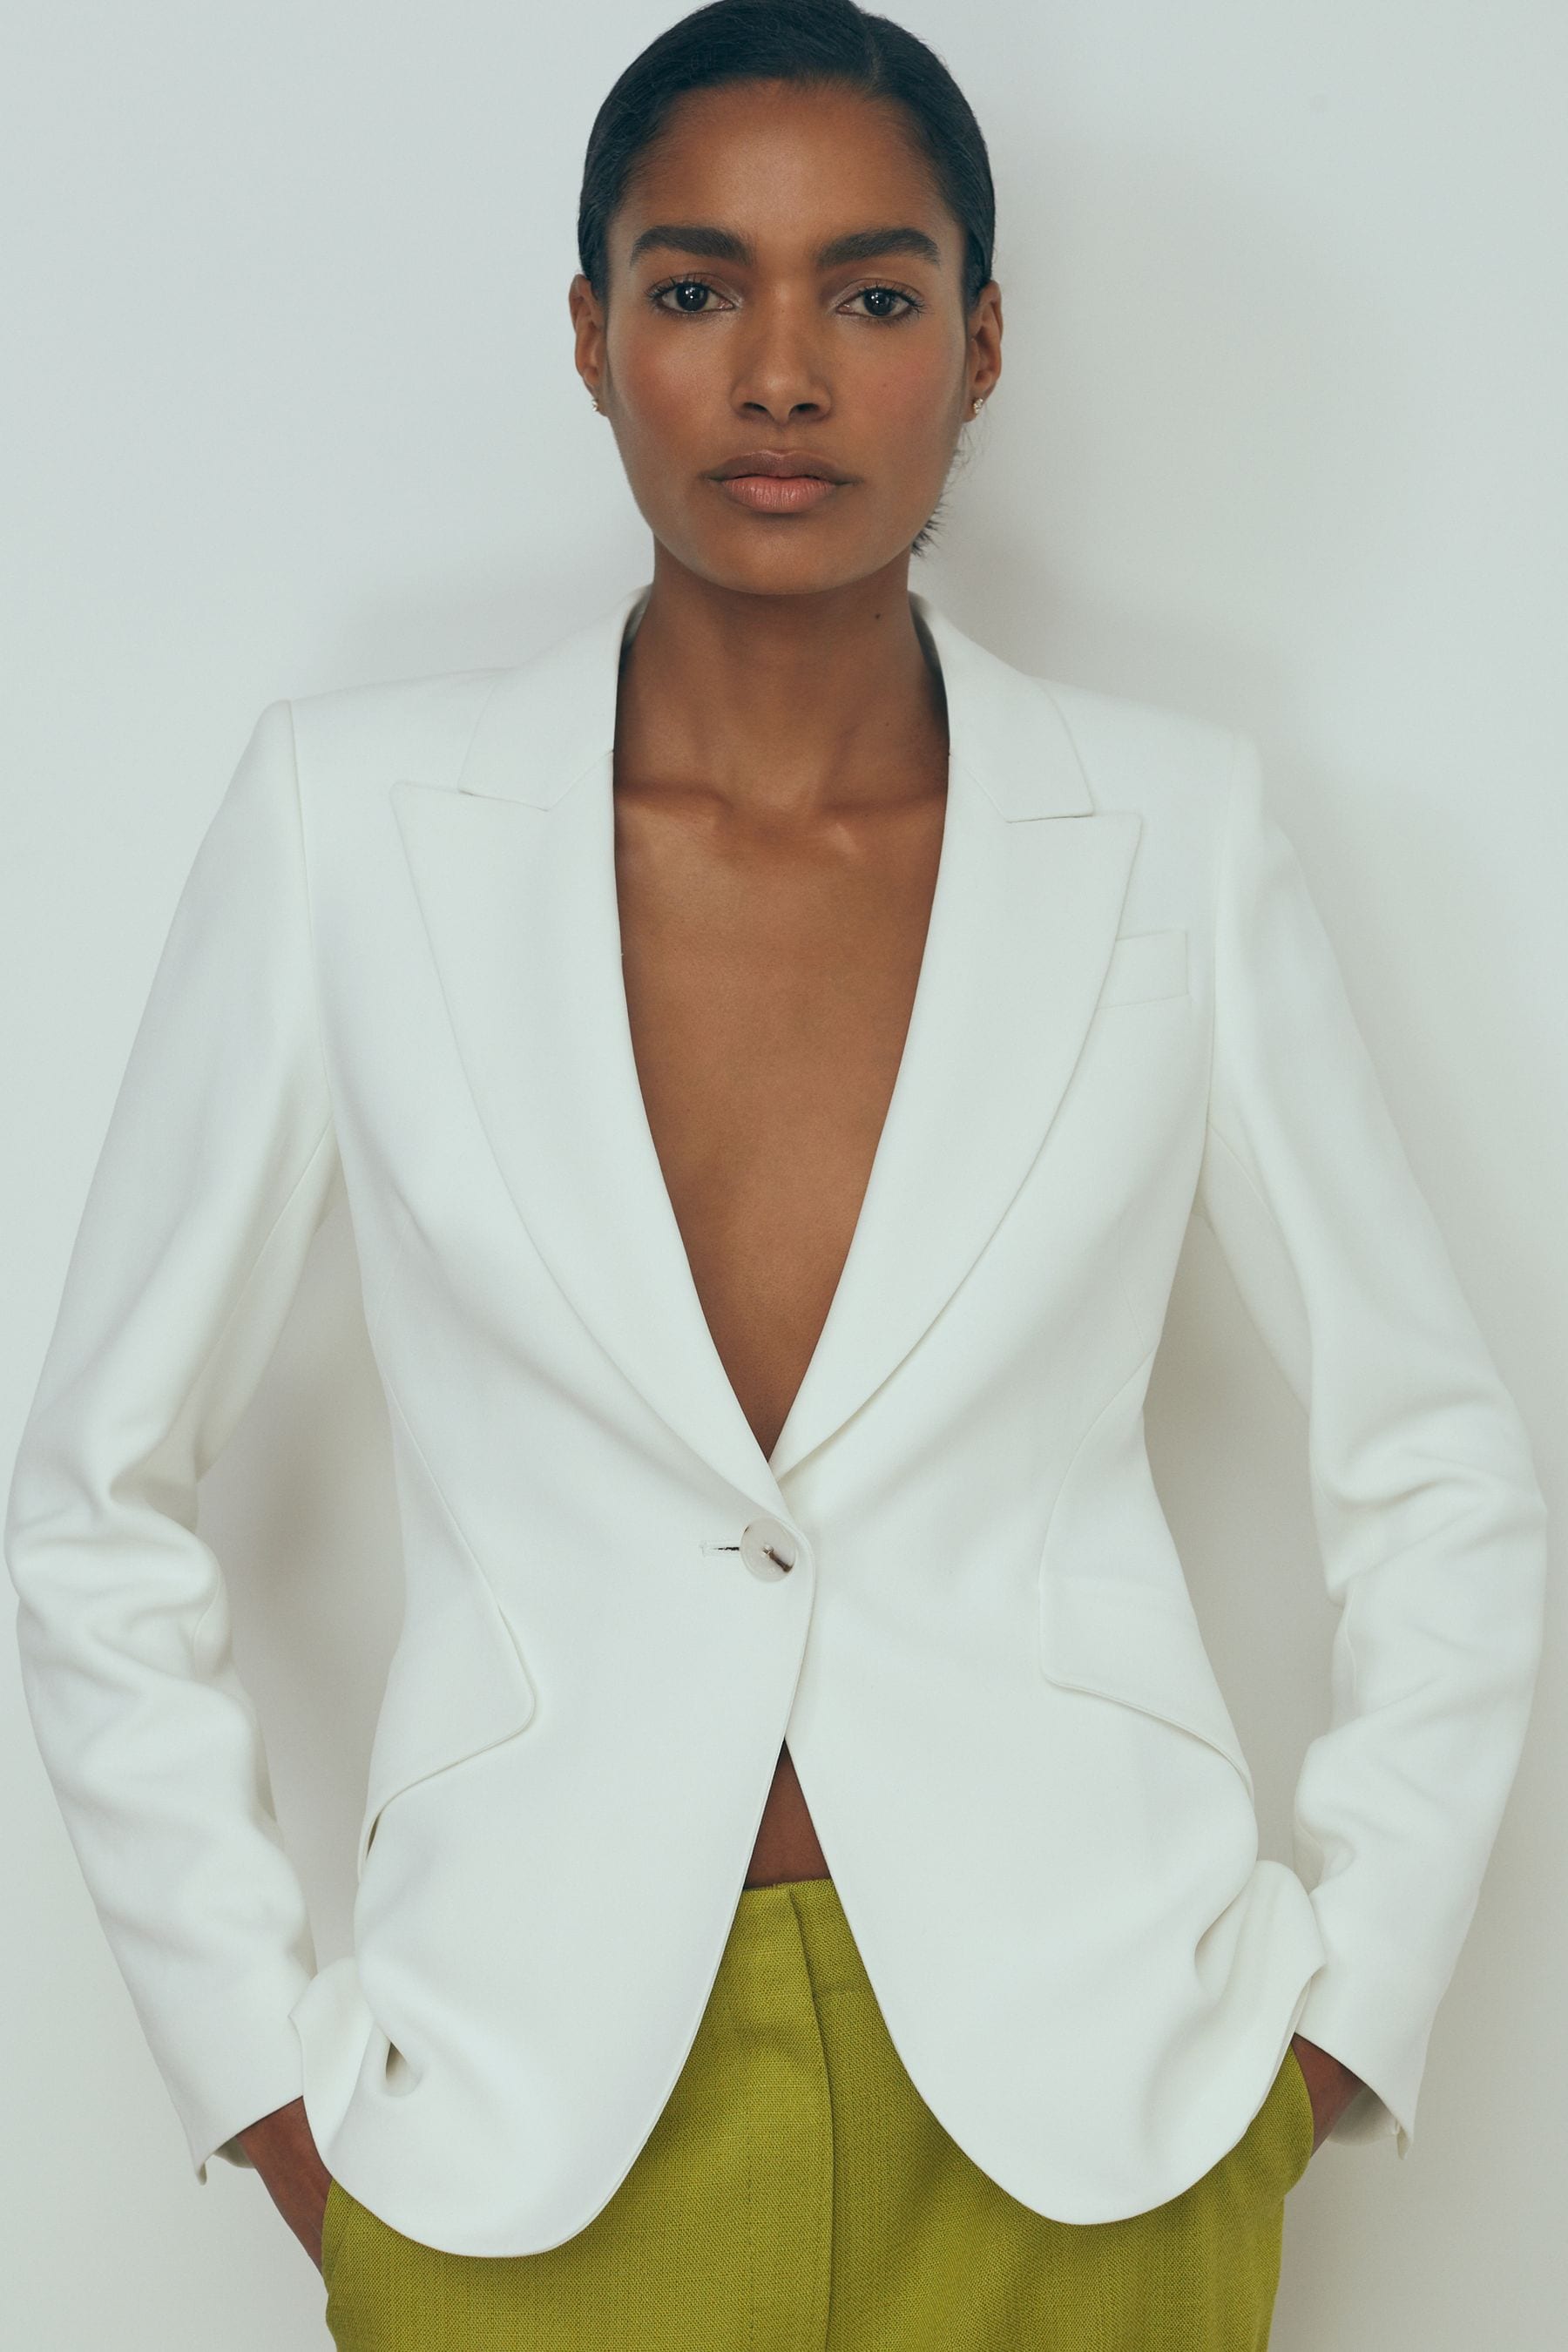 Atelier - Ivory Slim Fit Suit...